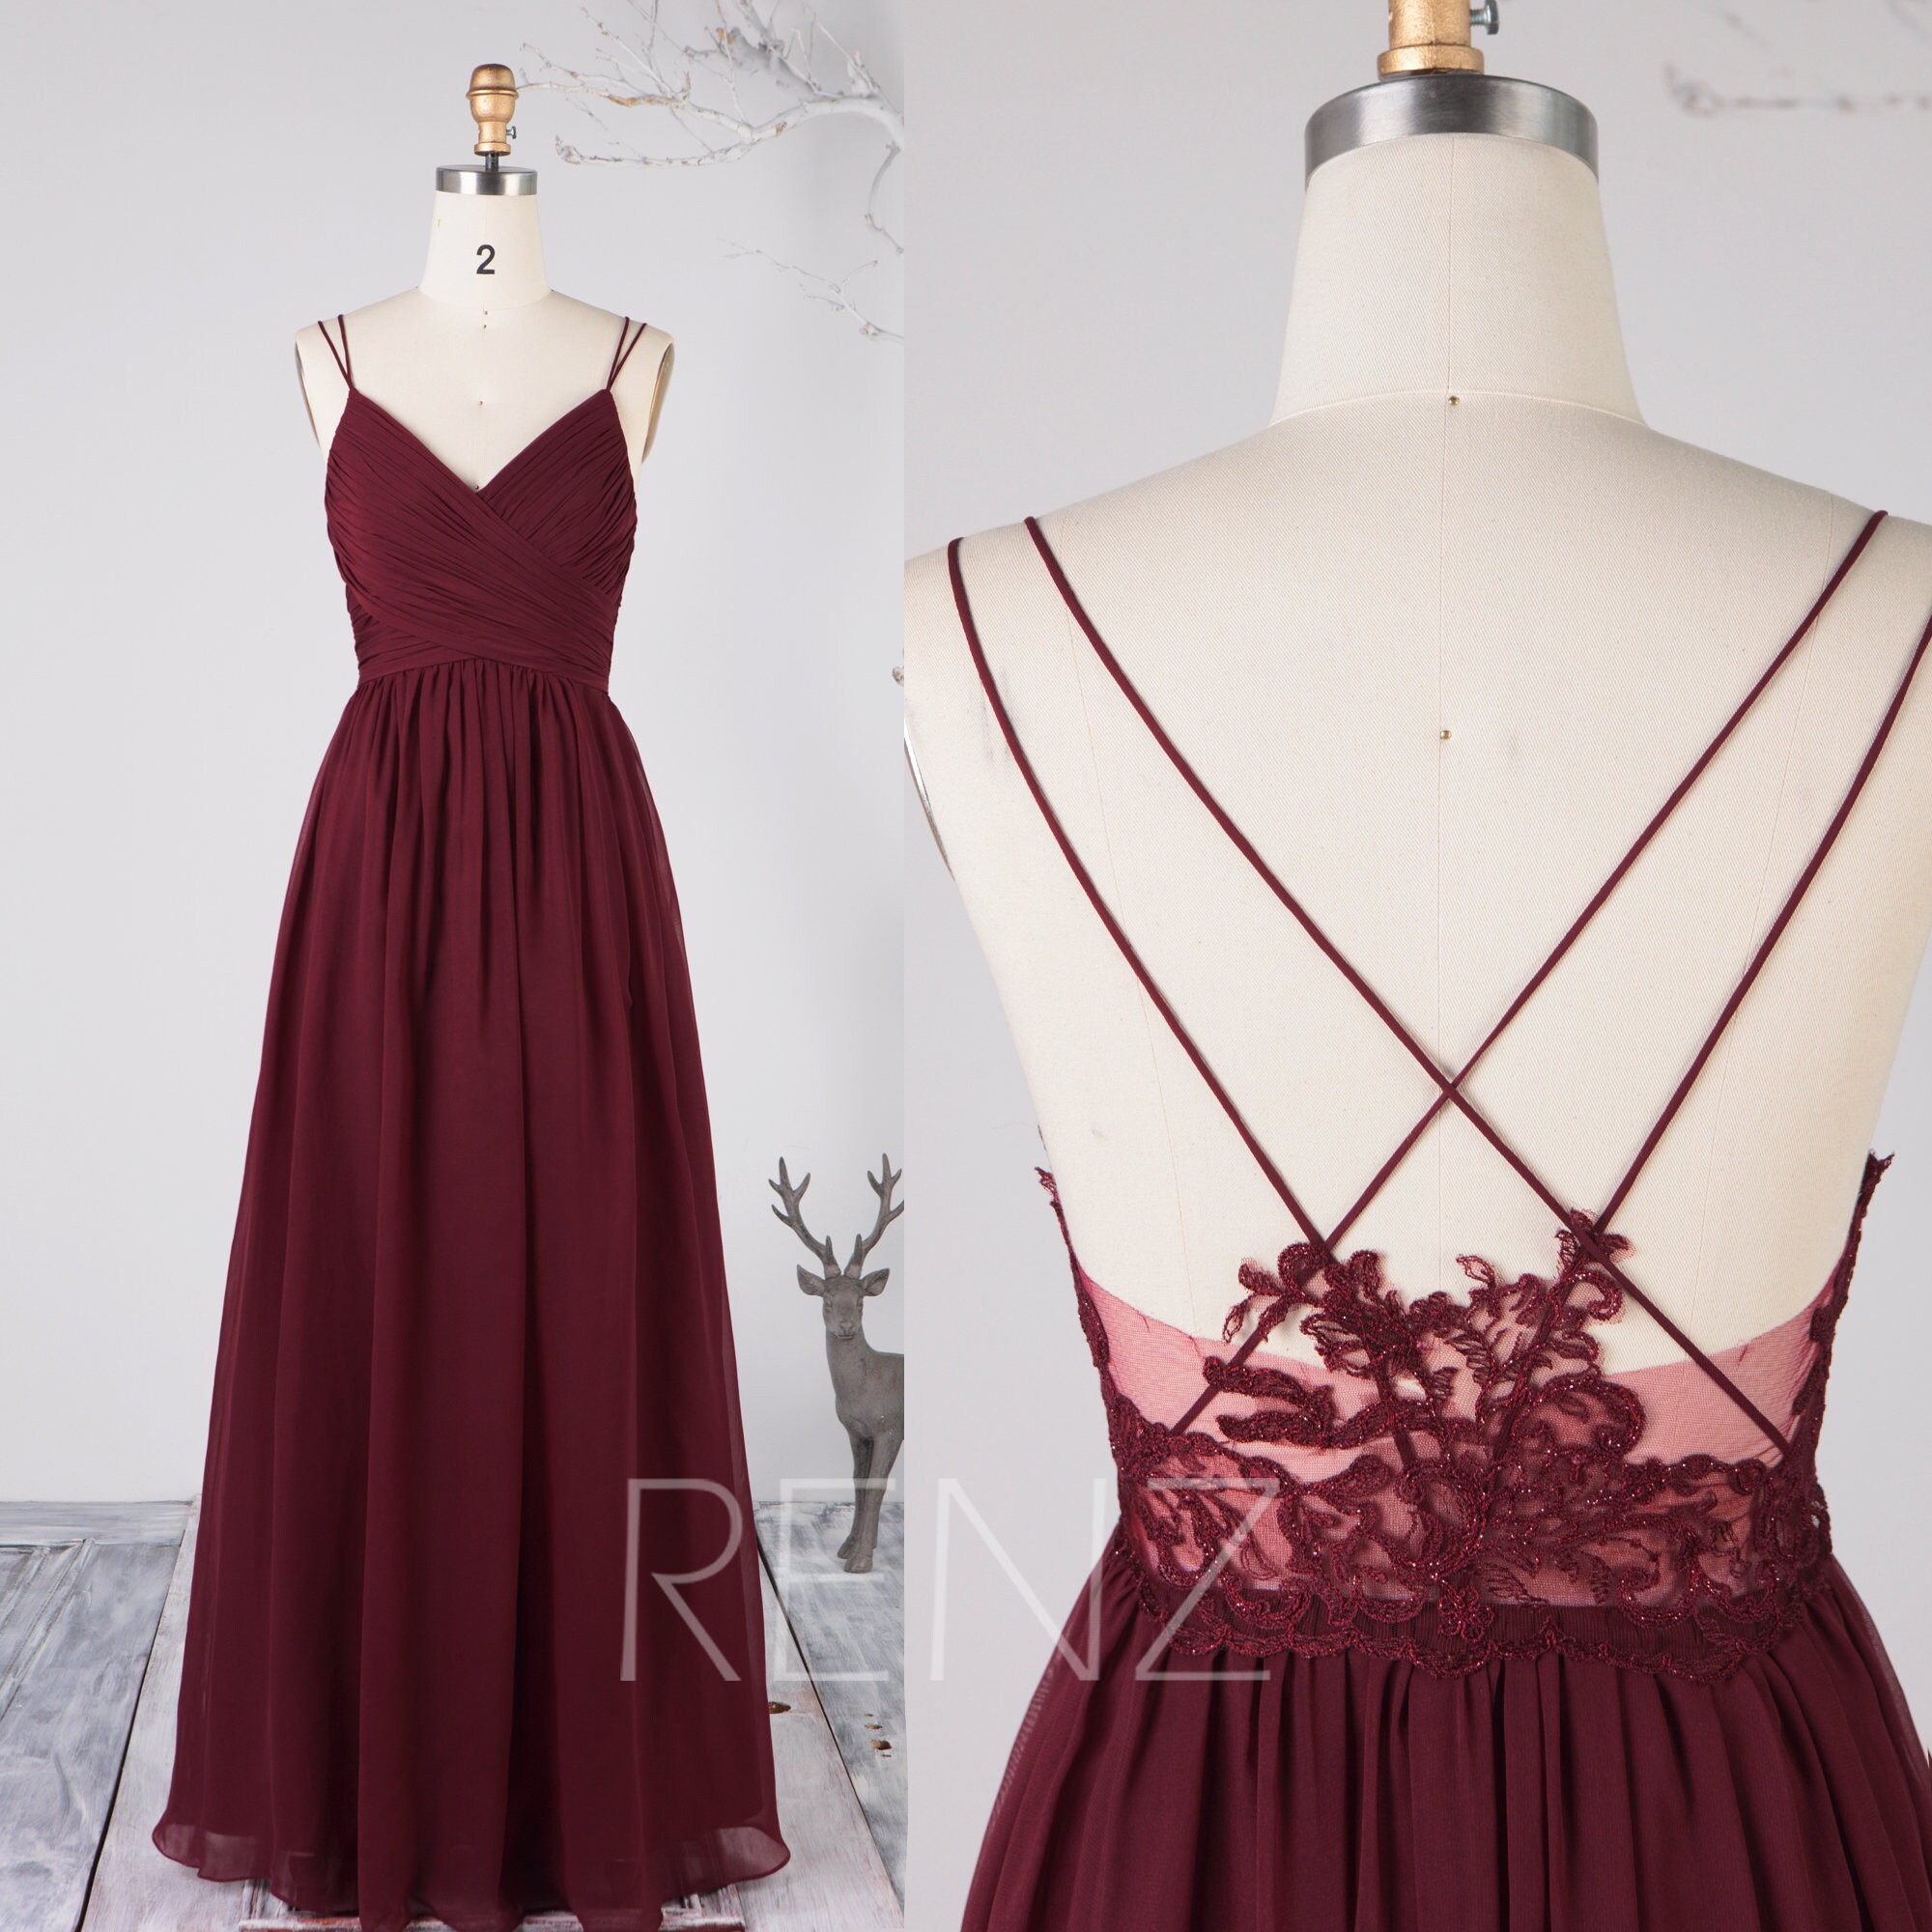 Mix & Match Bridesmaid Dress Burgundy Chiffon Prom Dress | Etsy